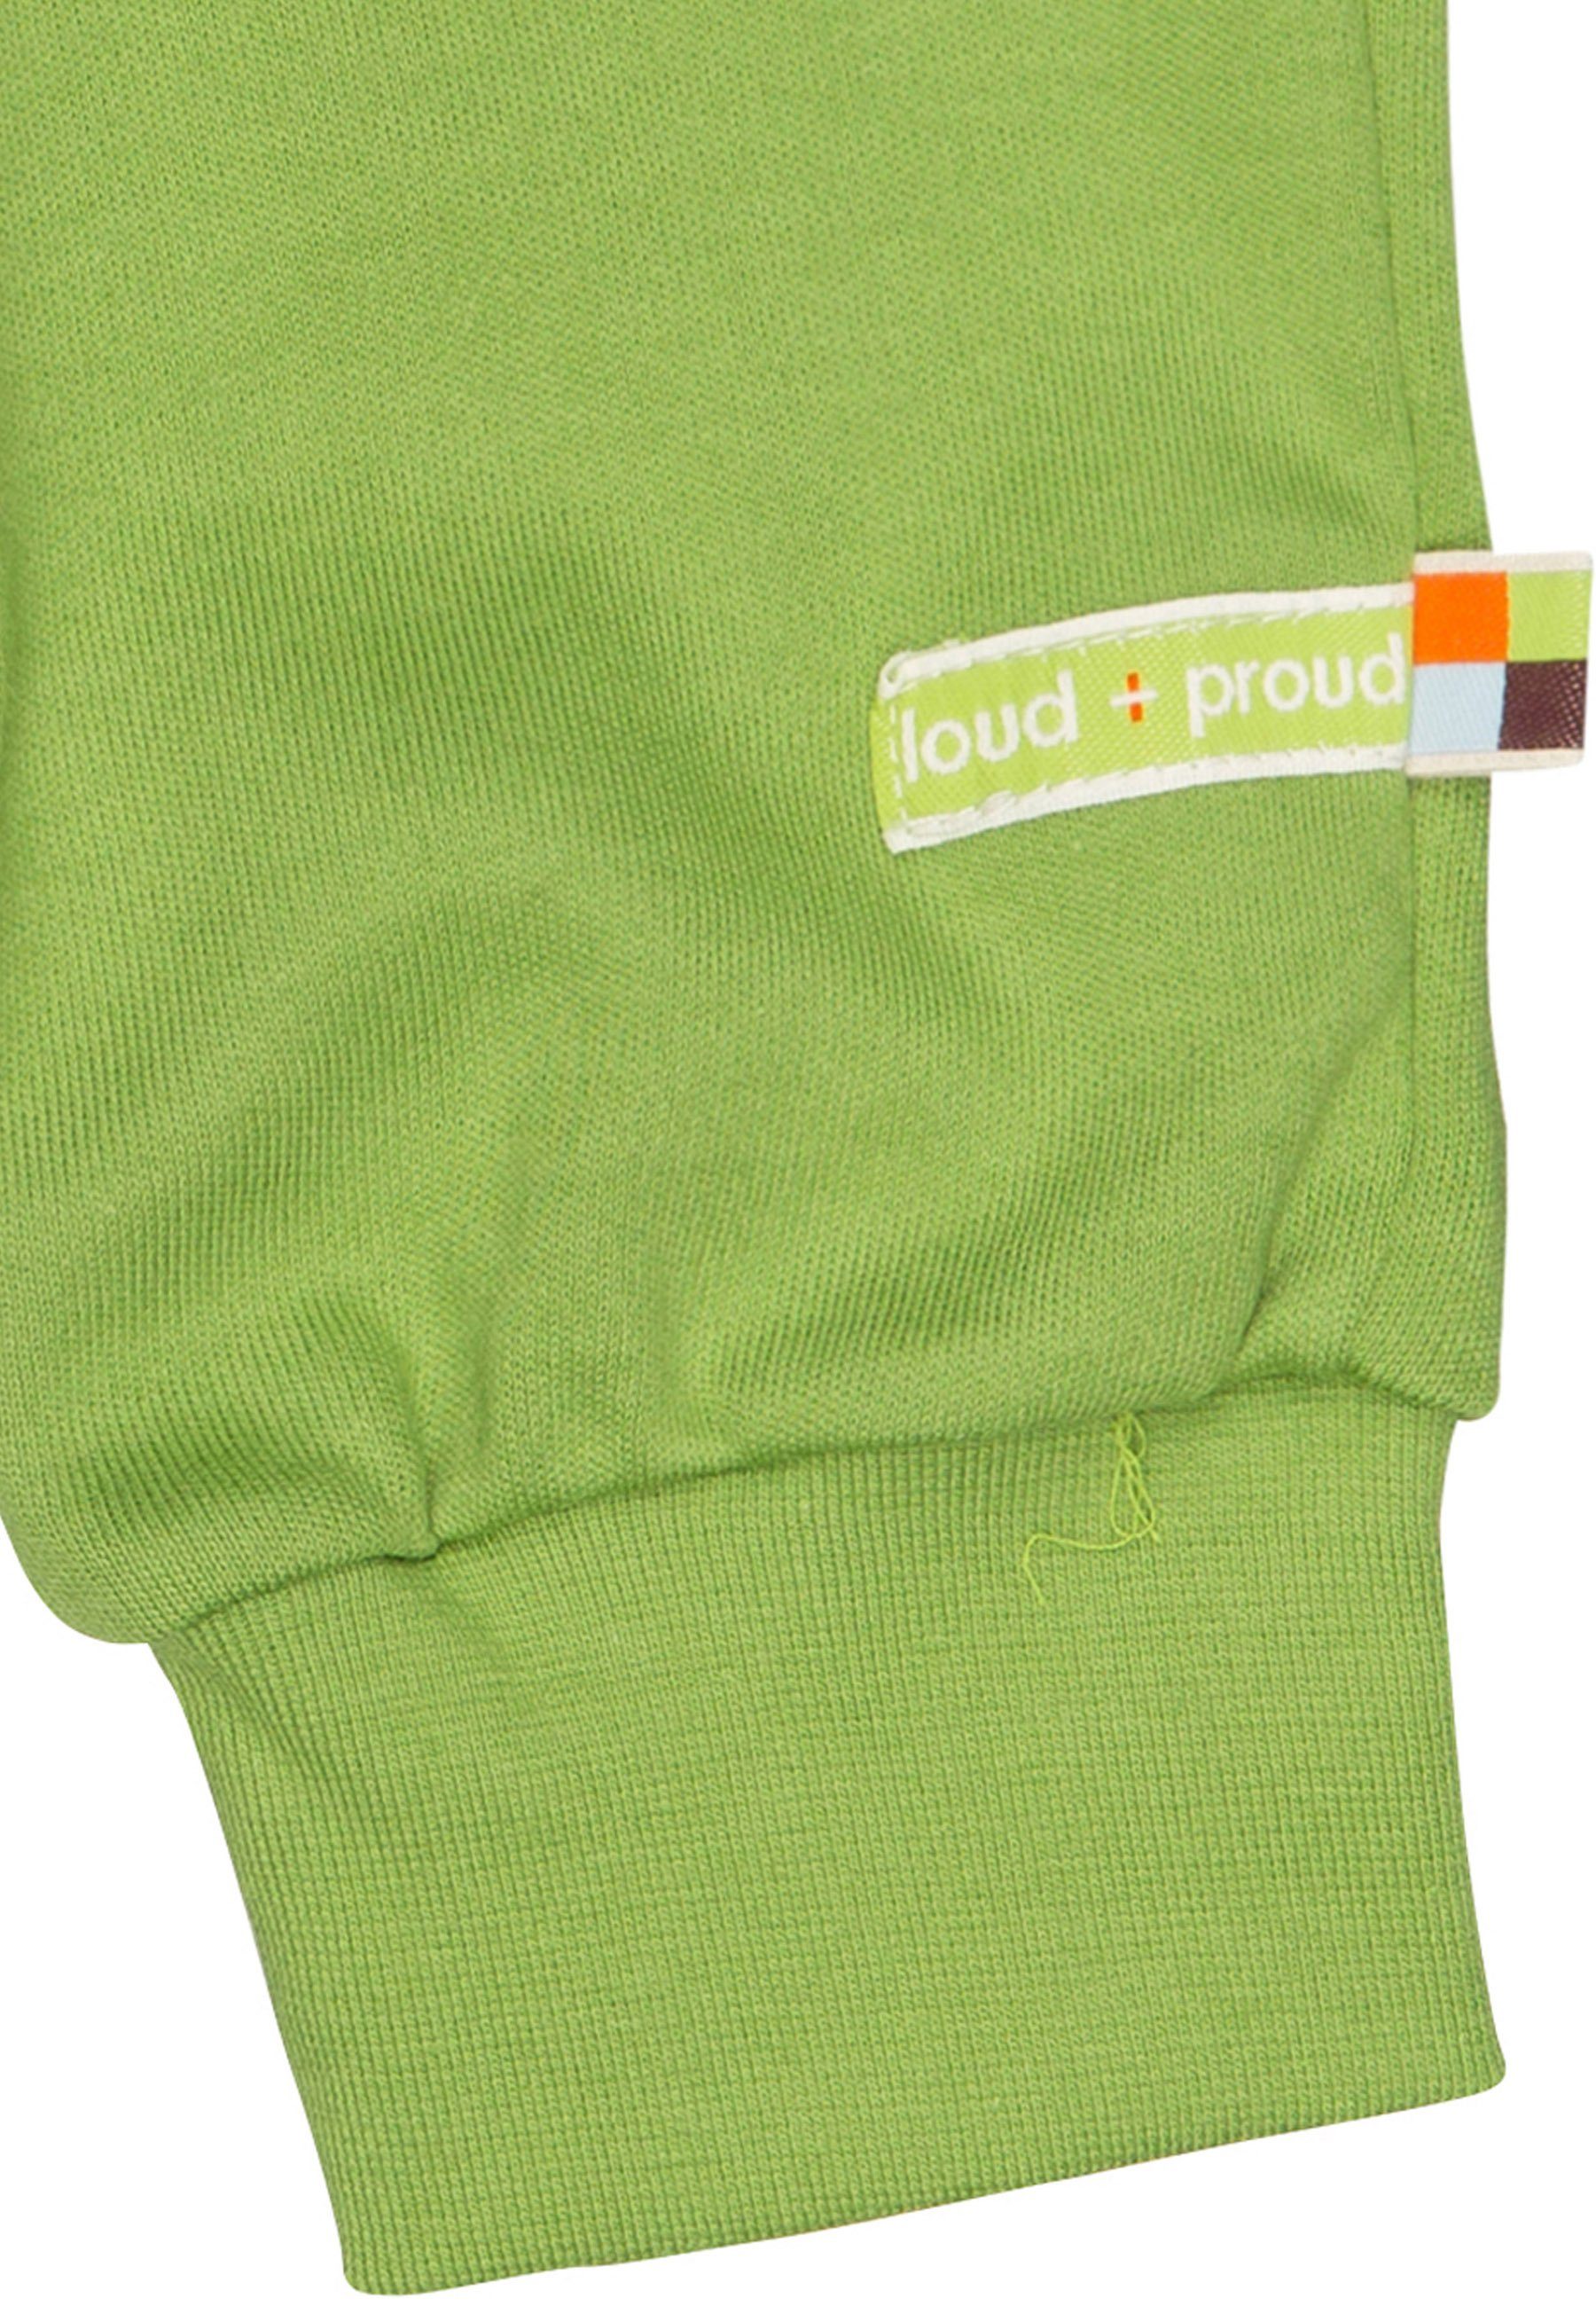 GOTS Moos Bio-Baumwolle mit loud + zertifizierte Sweathose proud Umschlagbund